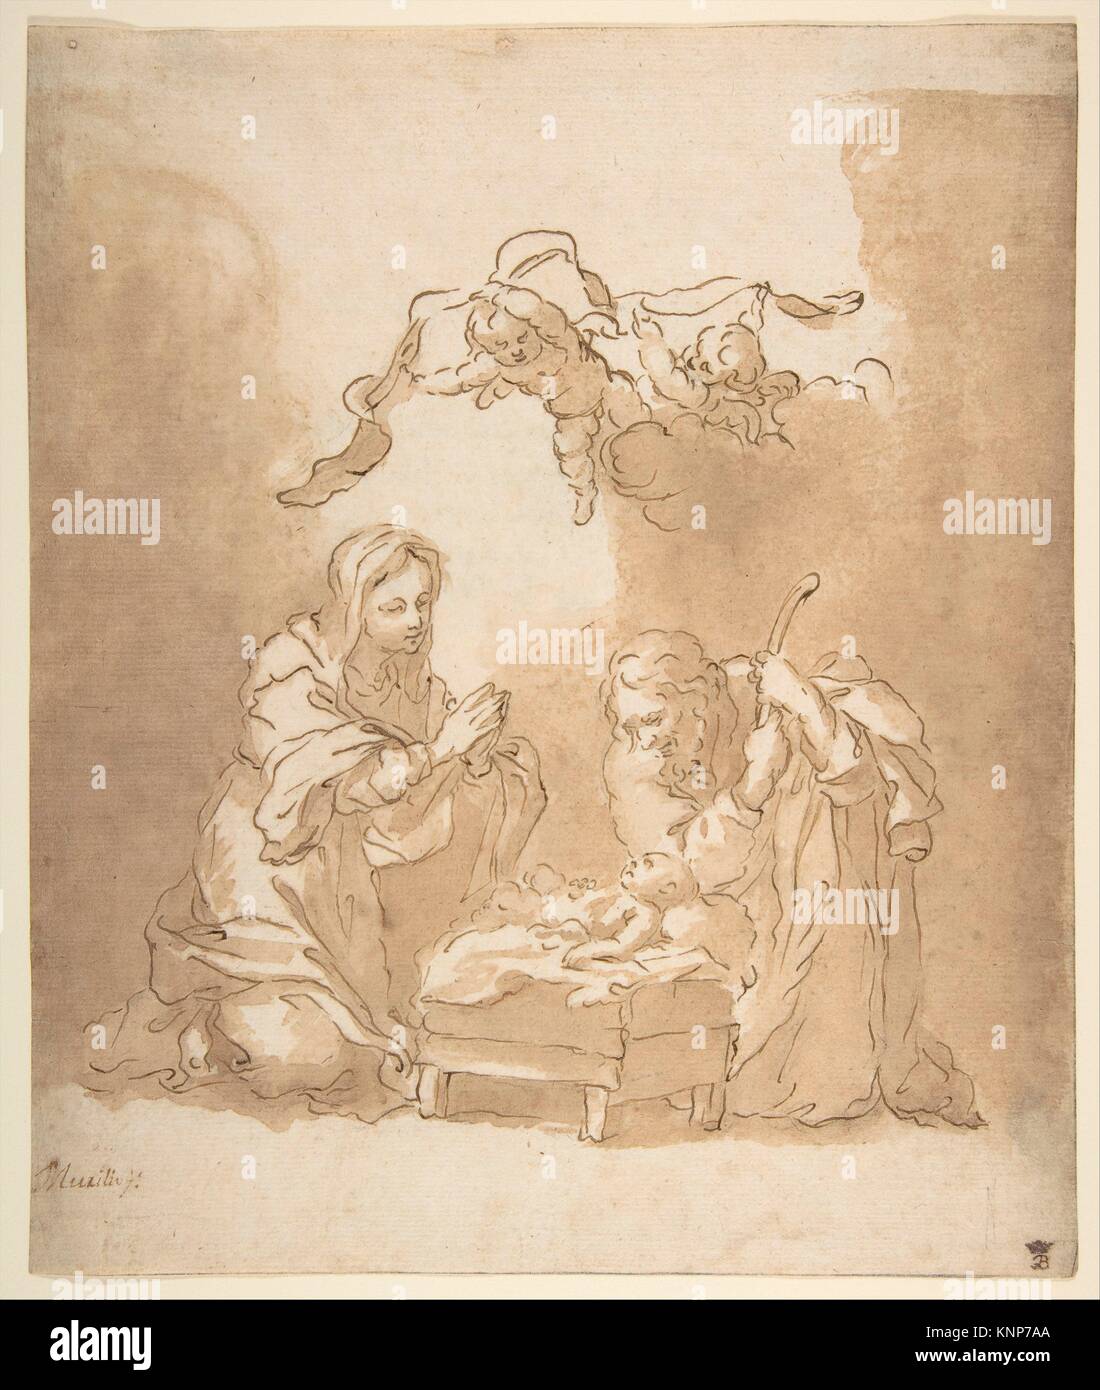 La Natividad. Artista: Bartolomé Murillo Estebón (Español, 1617-1682 Sevilla Sevilla); Fecha: 1665-70; Media: lápiz y tinta marrón, marrón y cepillo de lavado, Foto de stock